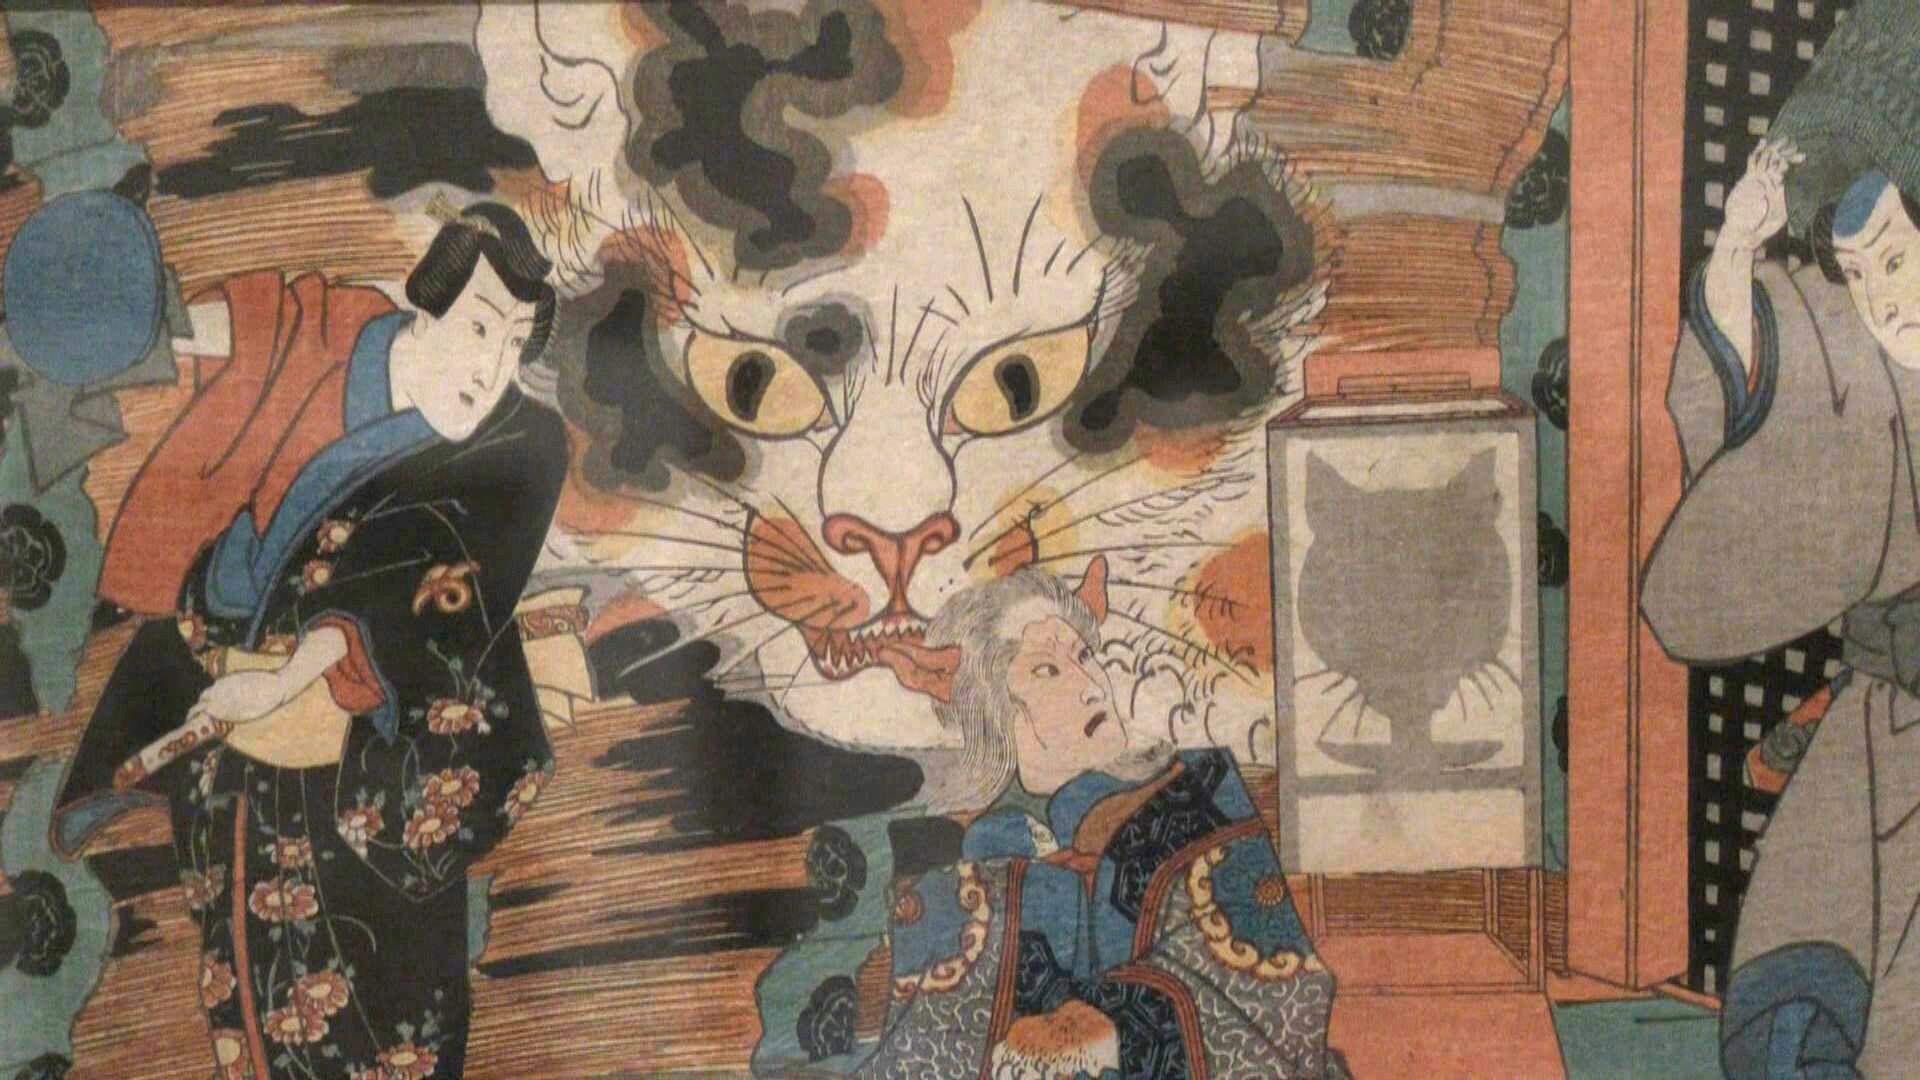 ネコが描かれた浮世絵などを紹介　｢ごろごろまるまるネコづくし展｣　愛知・安城市